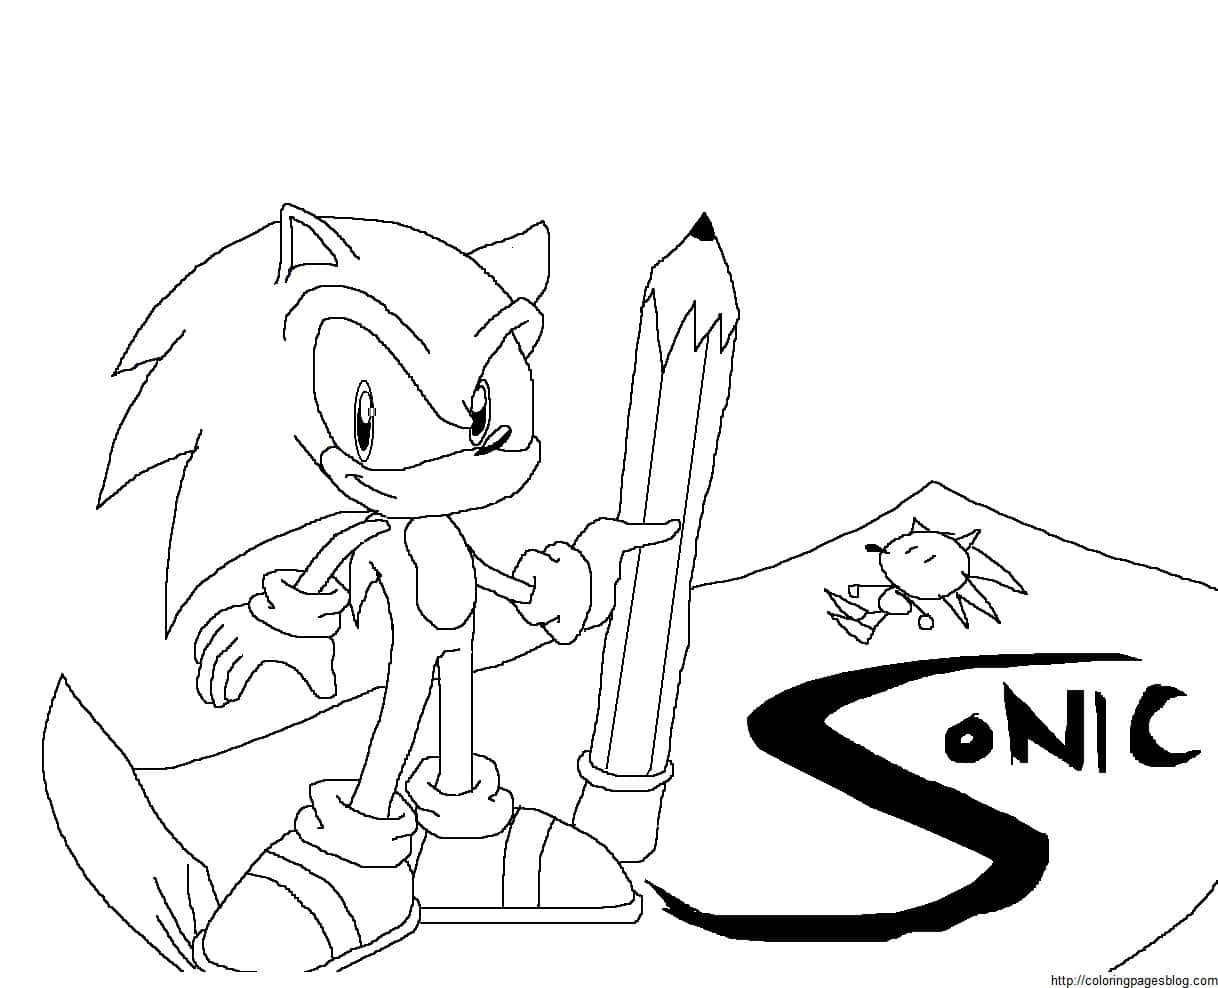 Imagende Sonic Para Colorear Con Lápiz Y Papel.